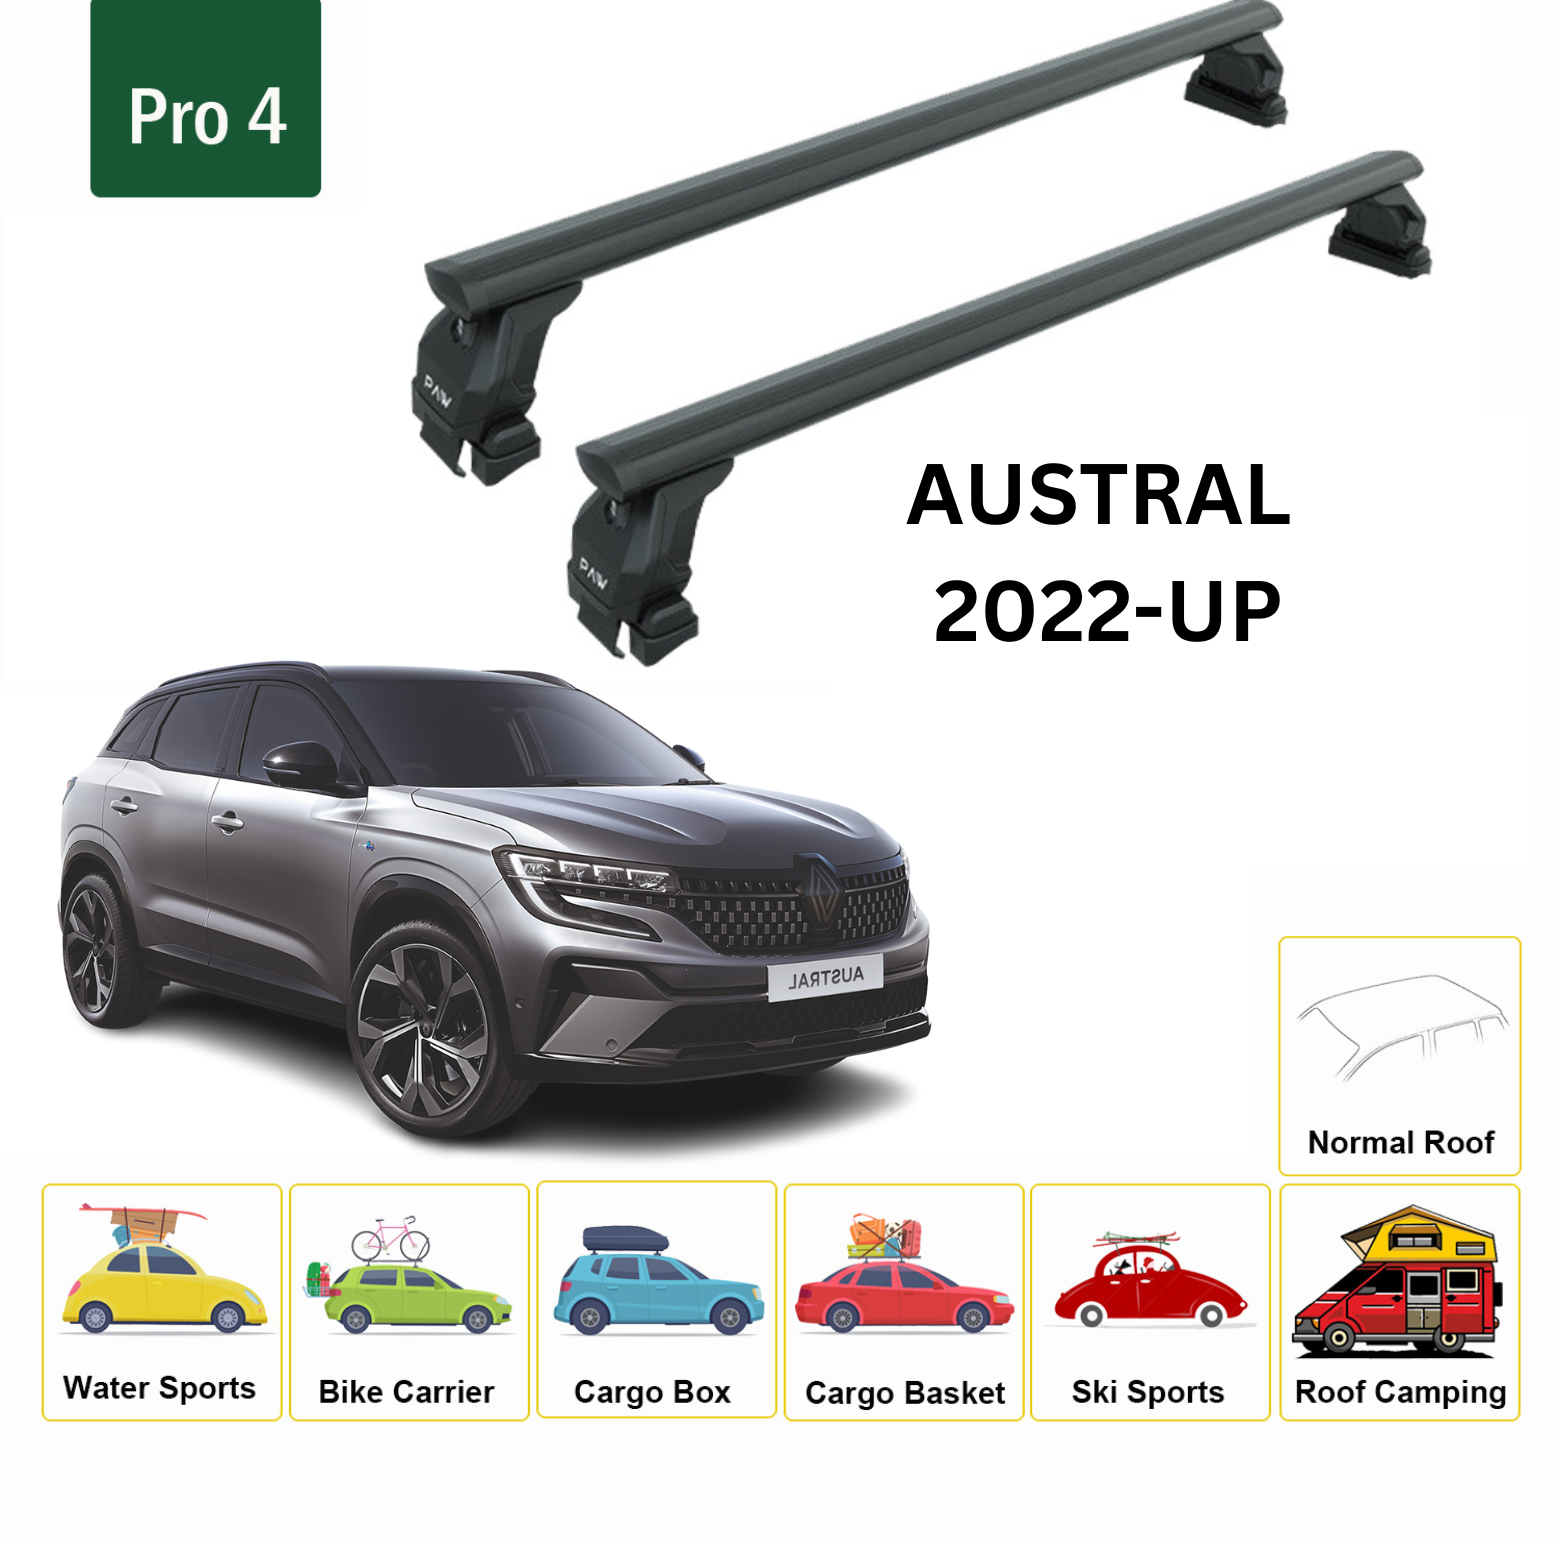 Für Renault Austral 2022-Up Dachträgersystem, Aluminium-Querstange, Metallhalterung, normales Dach, schwarz